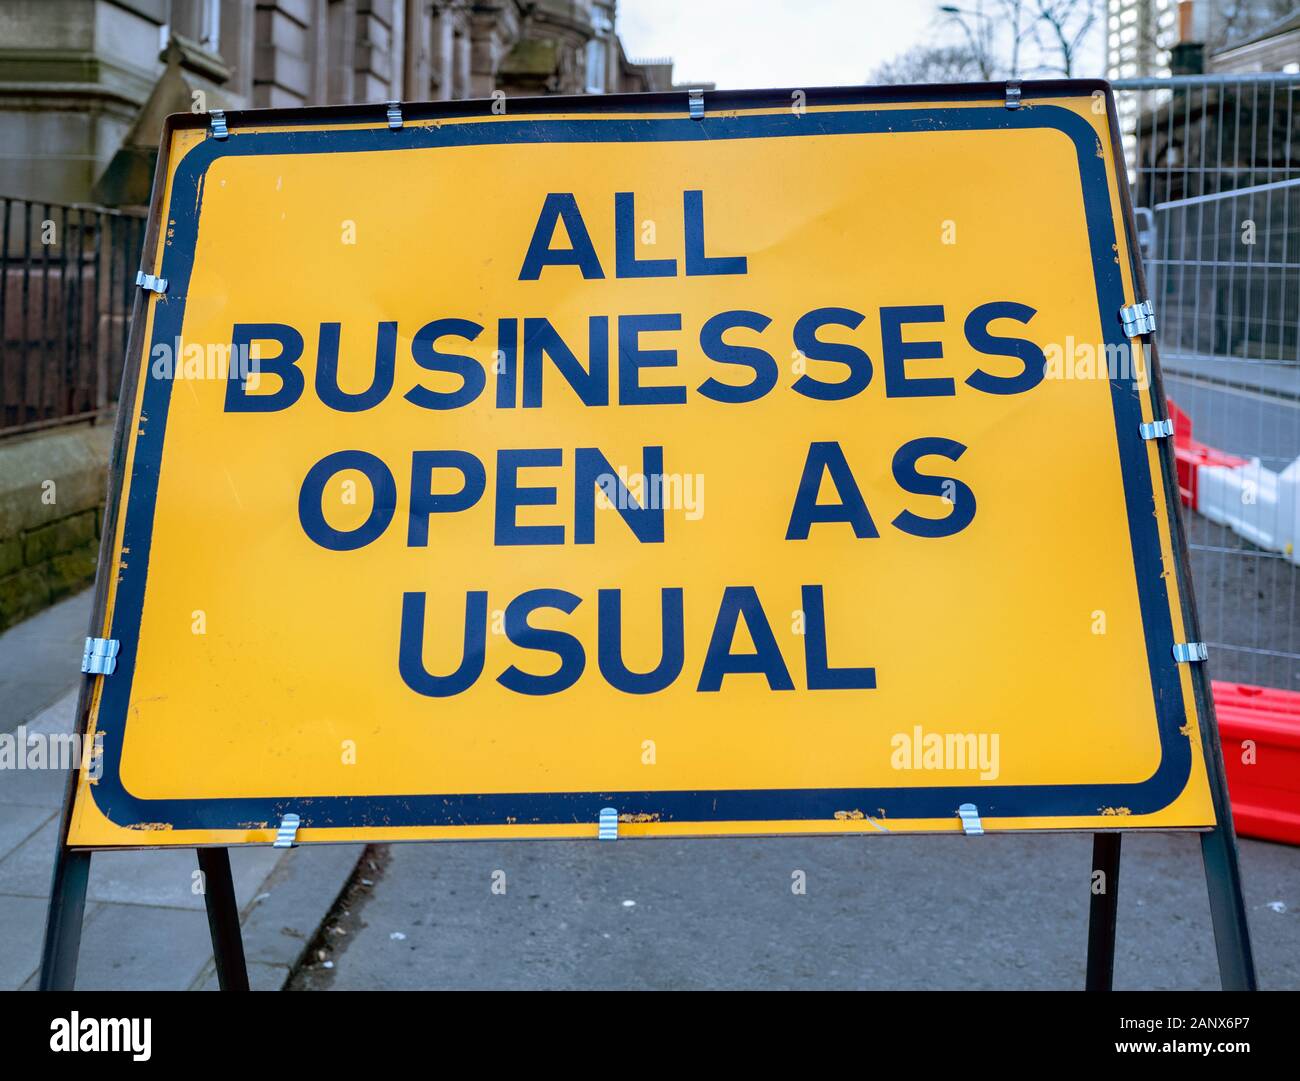 Todos los negocios abiertos como es habitual firmar en el sitio de la tranvía de Edimburgo trabaja en Leith, Edimburgo, Escocia, Reino Unido. Foto de stock